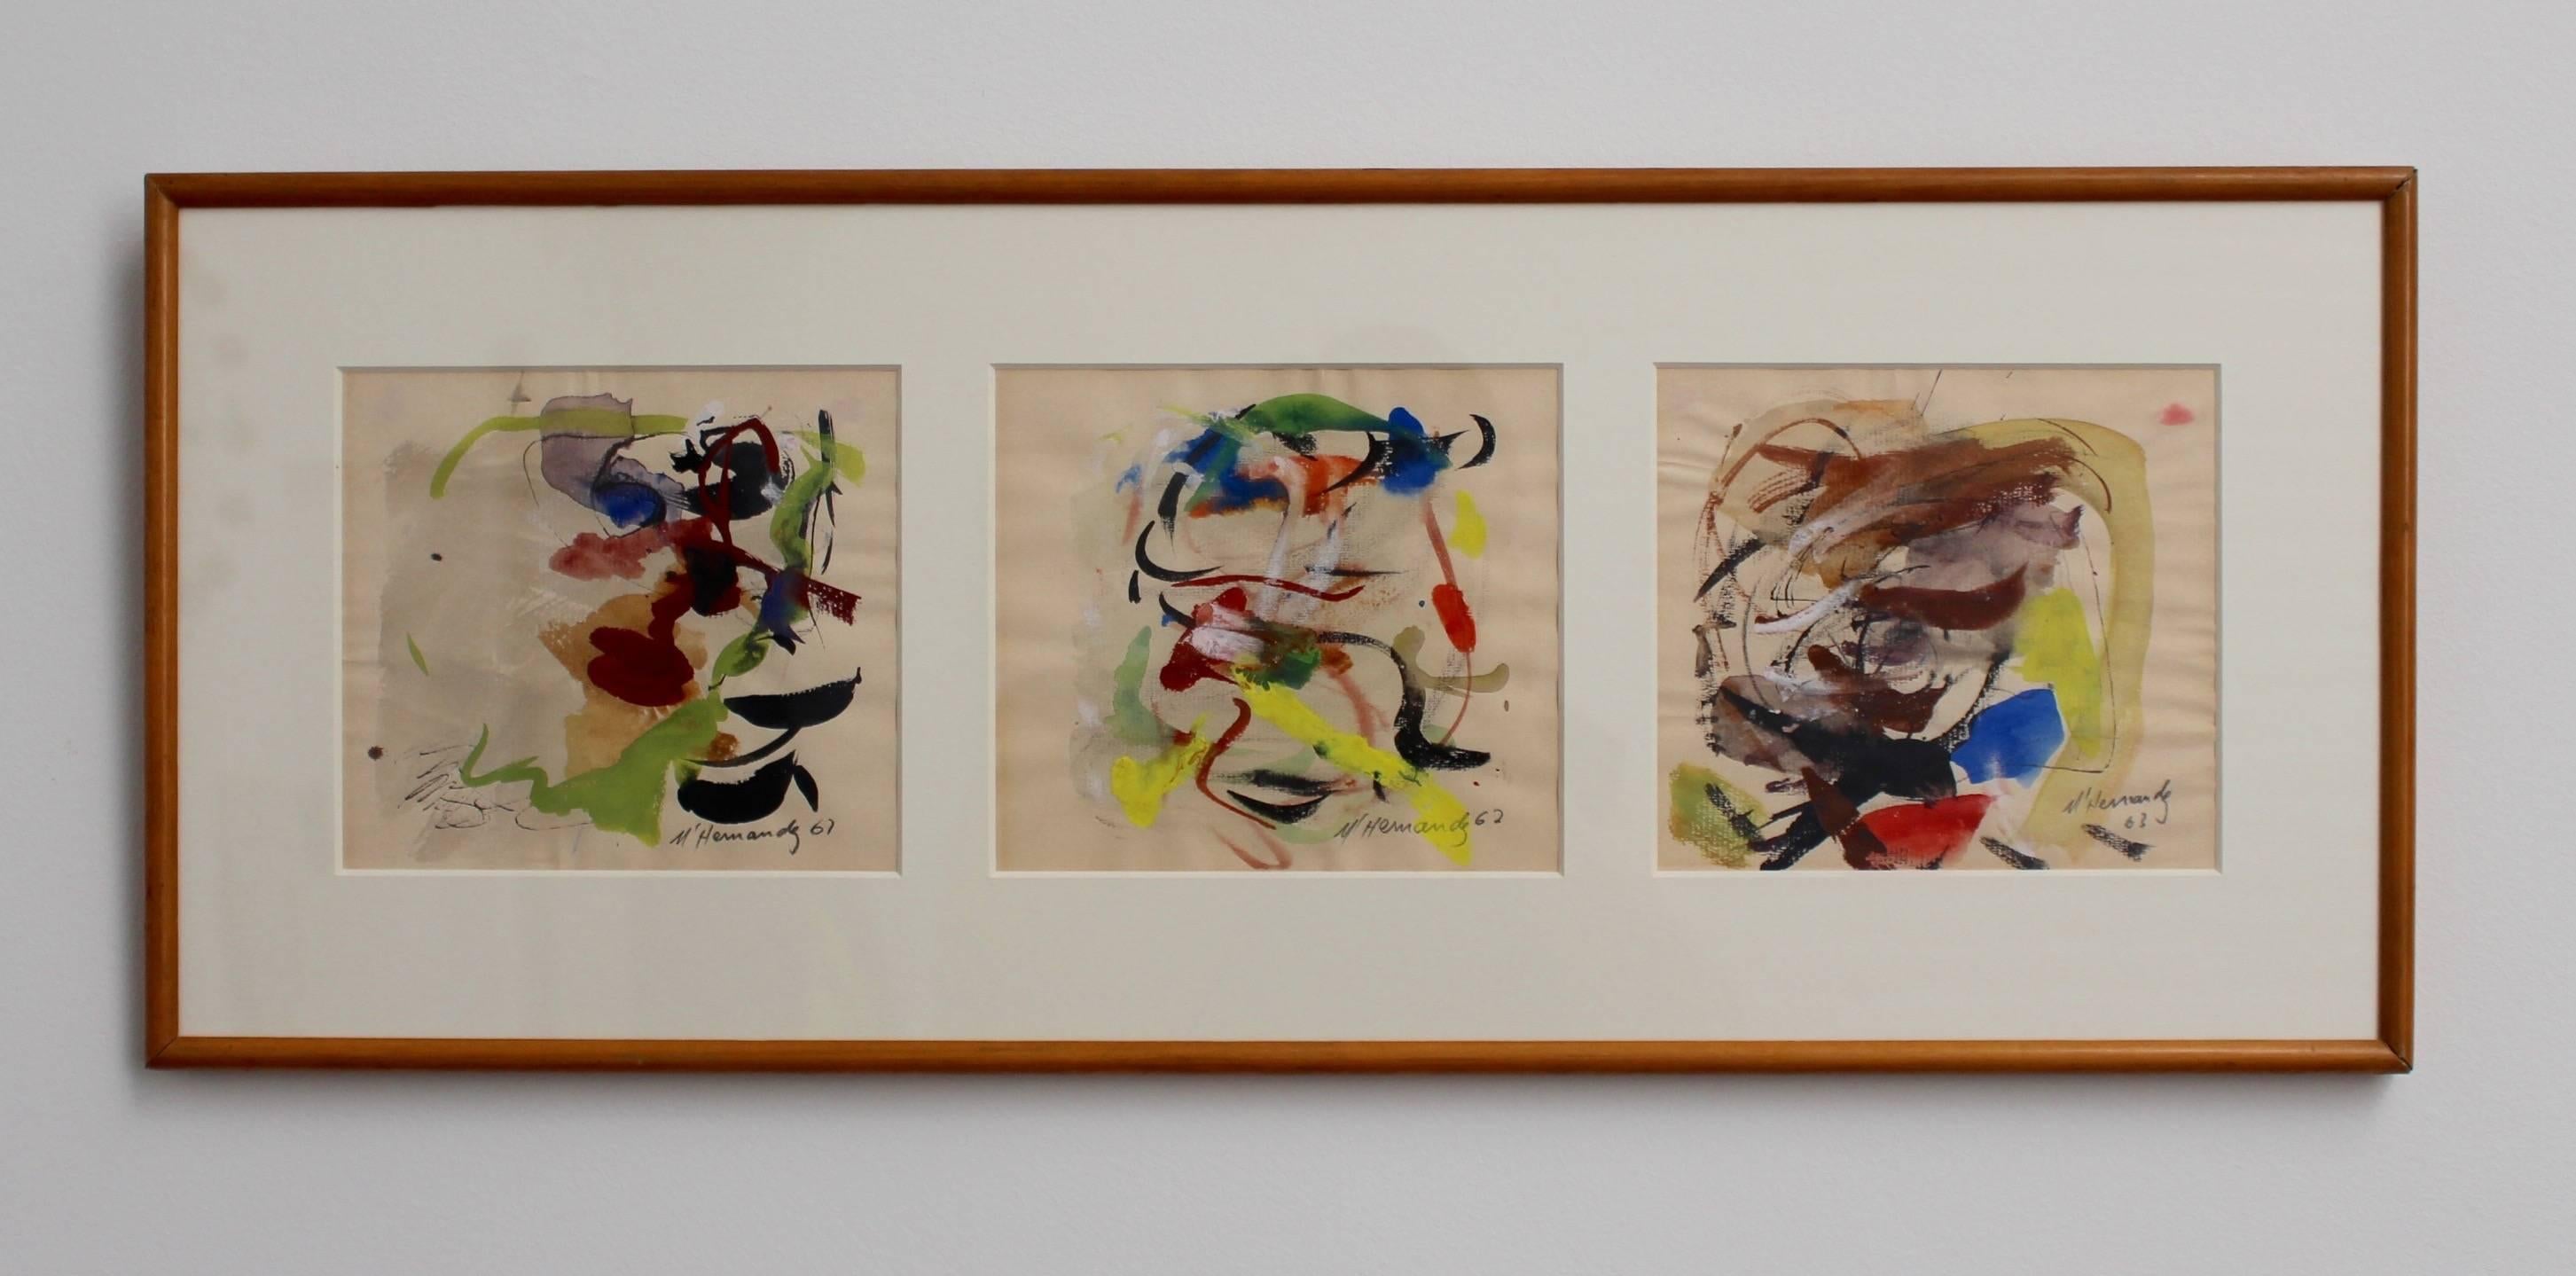 Aquarell auf Feinpapier von M. Hernandez. Dieses abstrakte Triptychon besteht aus Gemälden aus den Jahren 1961 bis 1963, die sauber in den Originalrahmen mit neuem Glas montiert sind. Das abstrakte Werk ist ein Wirbelsturm aus Farbe, Symmetrie und